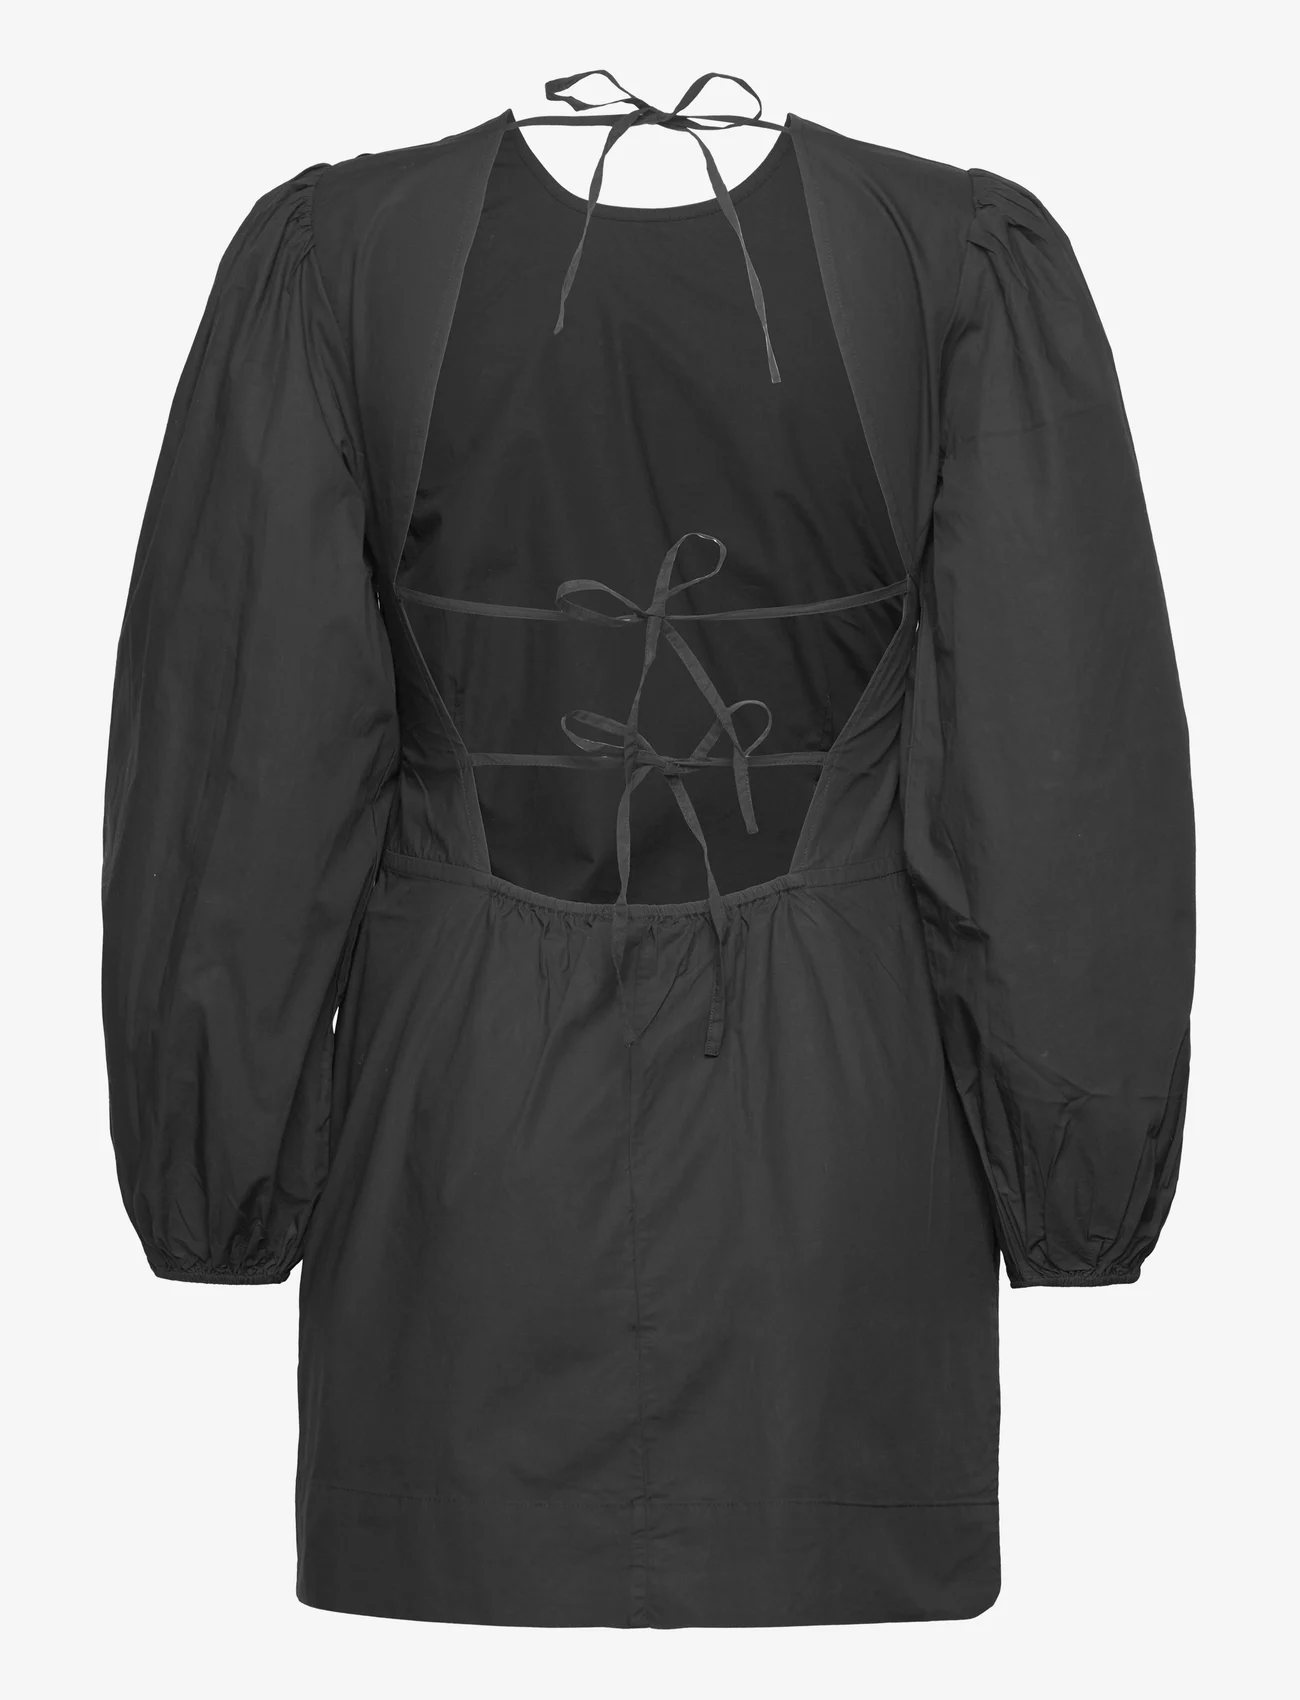 Ganni - Cotton Poplin Open Back Mini Dress - festklær til outlet-priser - black - 1